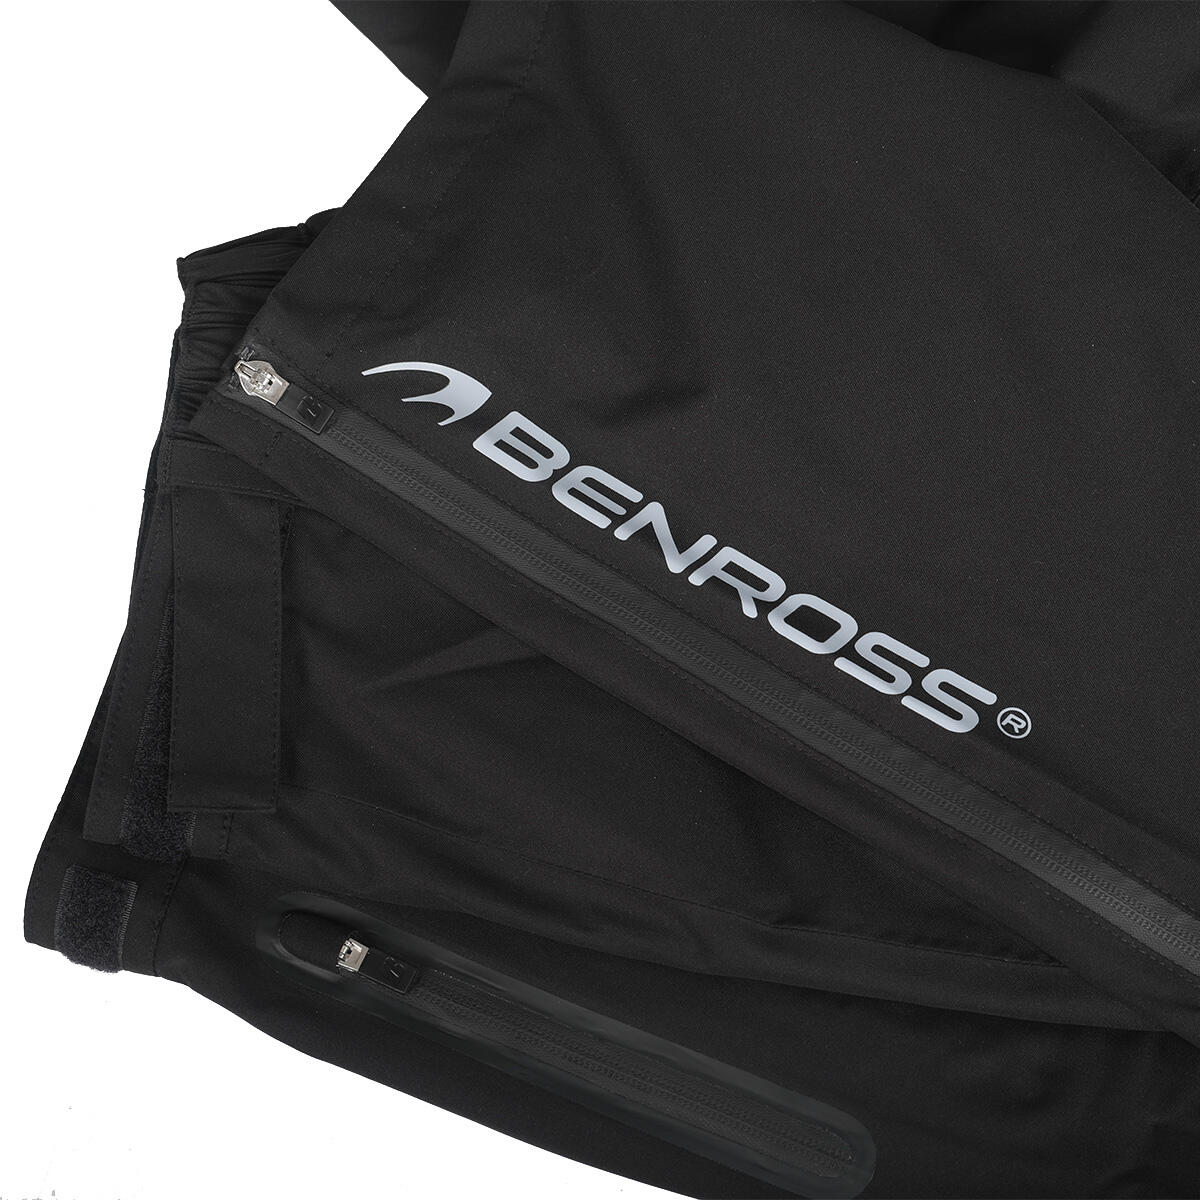 Benross Men's Hydrp Pro X Waterproof Golf Trousers 3/4